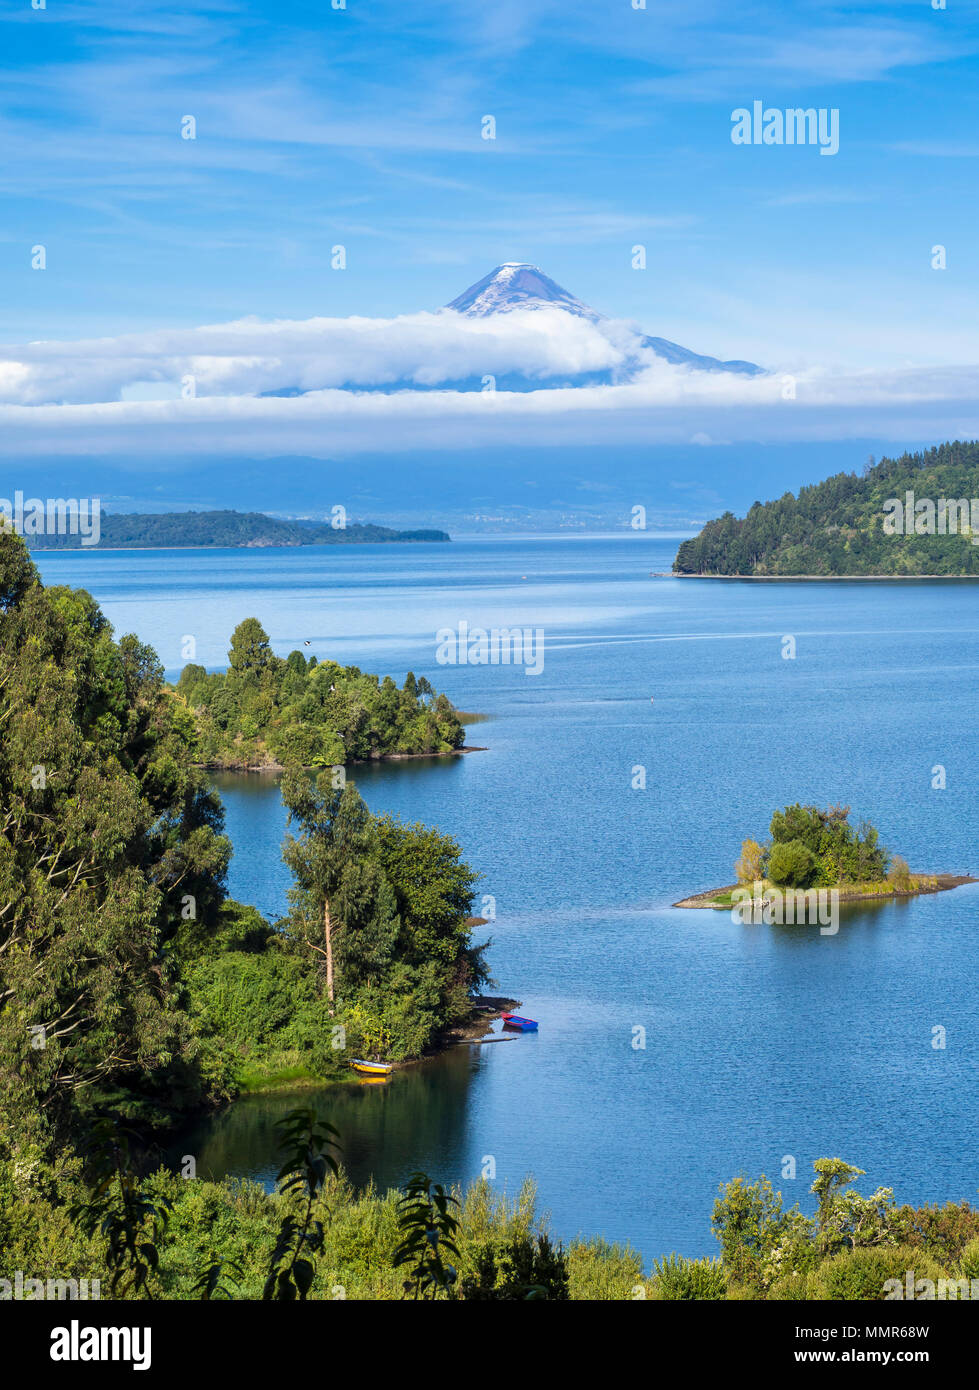 Chilean lake district,  lago llanquihue, volcano Osorno, Chile Stock Photo